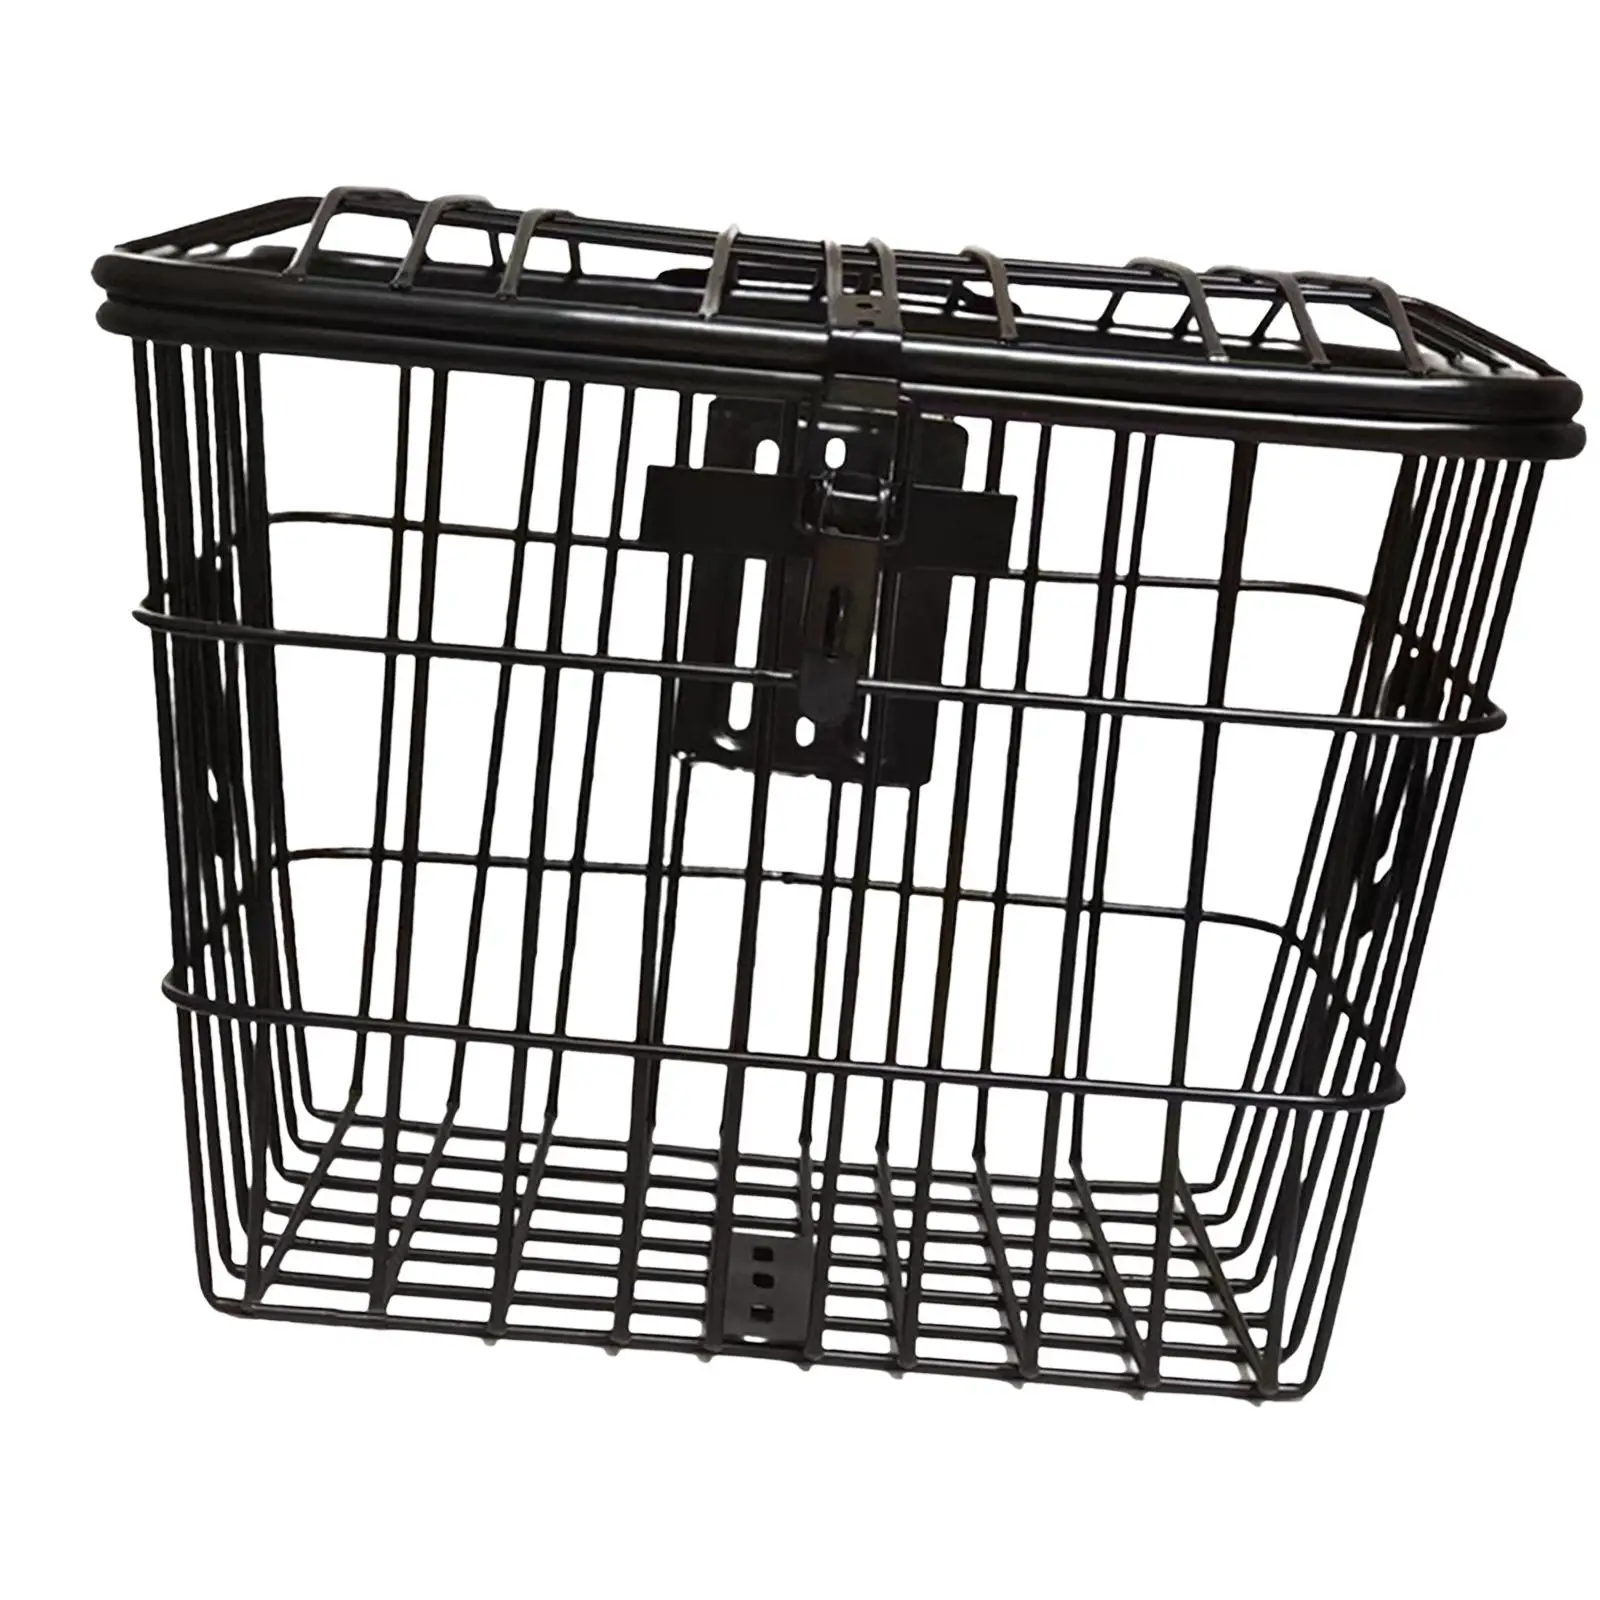 Metal Bike Basket Storage Box Cargo Rack Organizer Durable with Mounting Screws